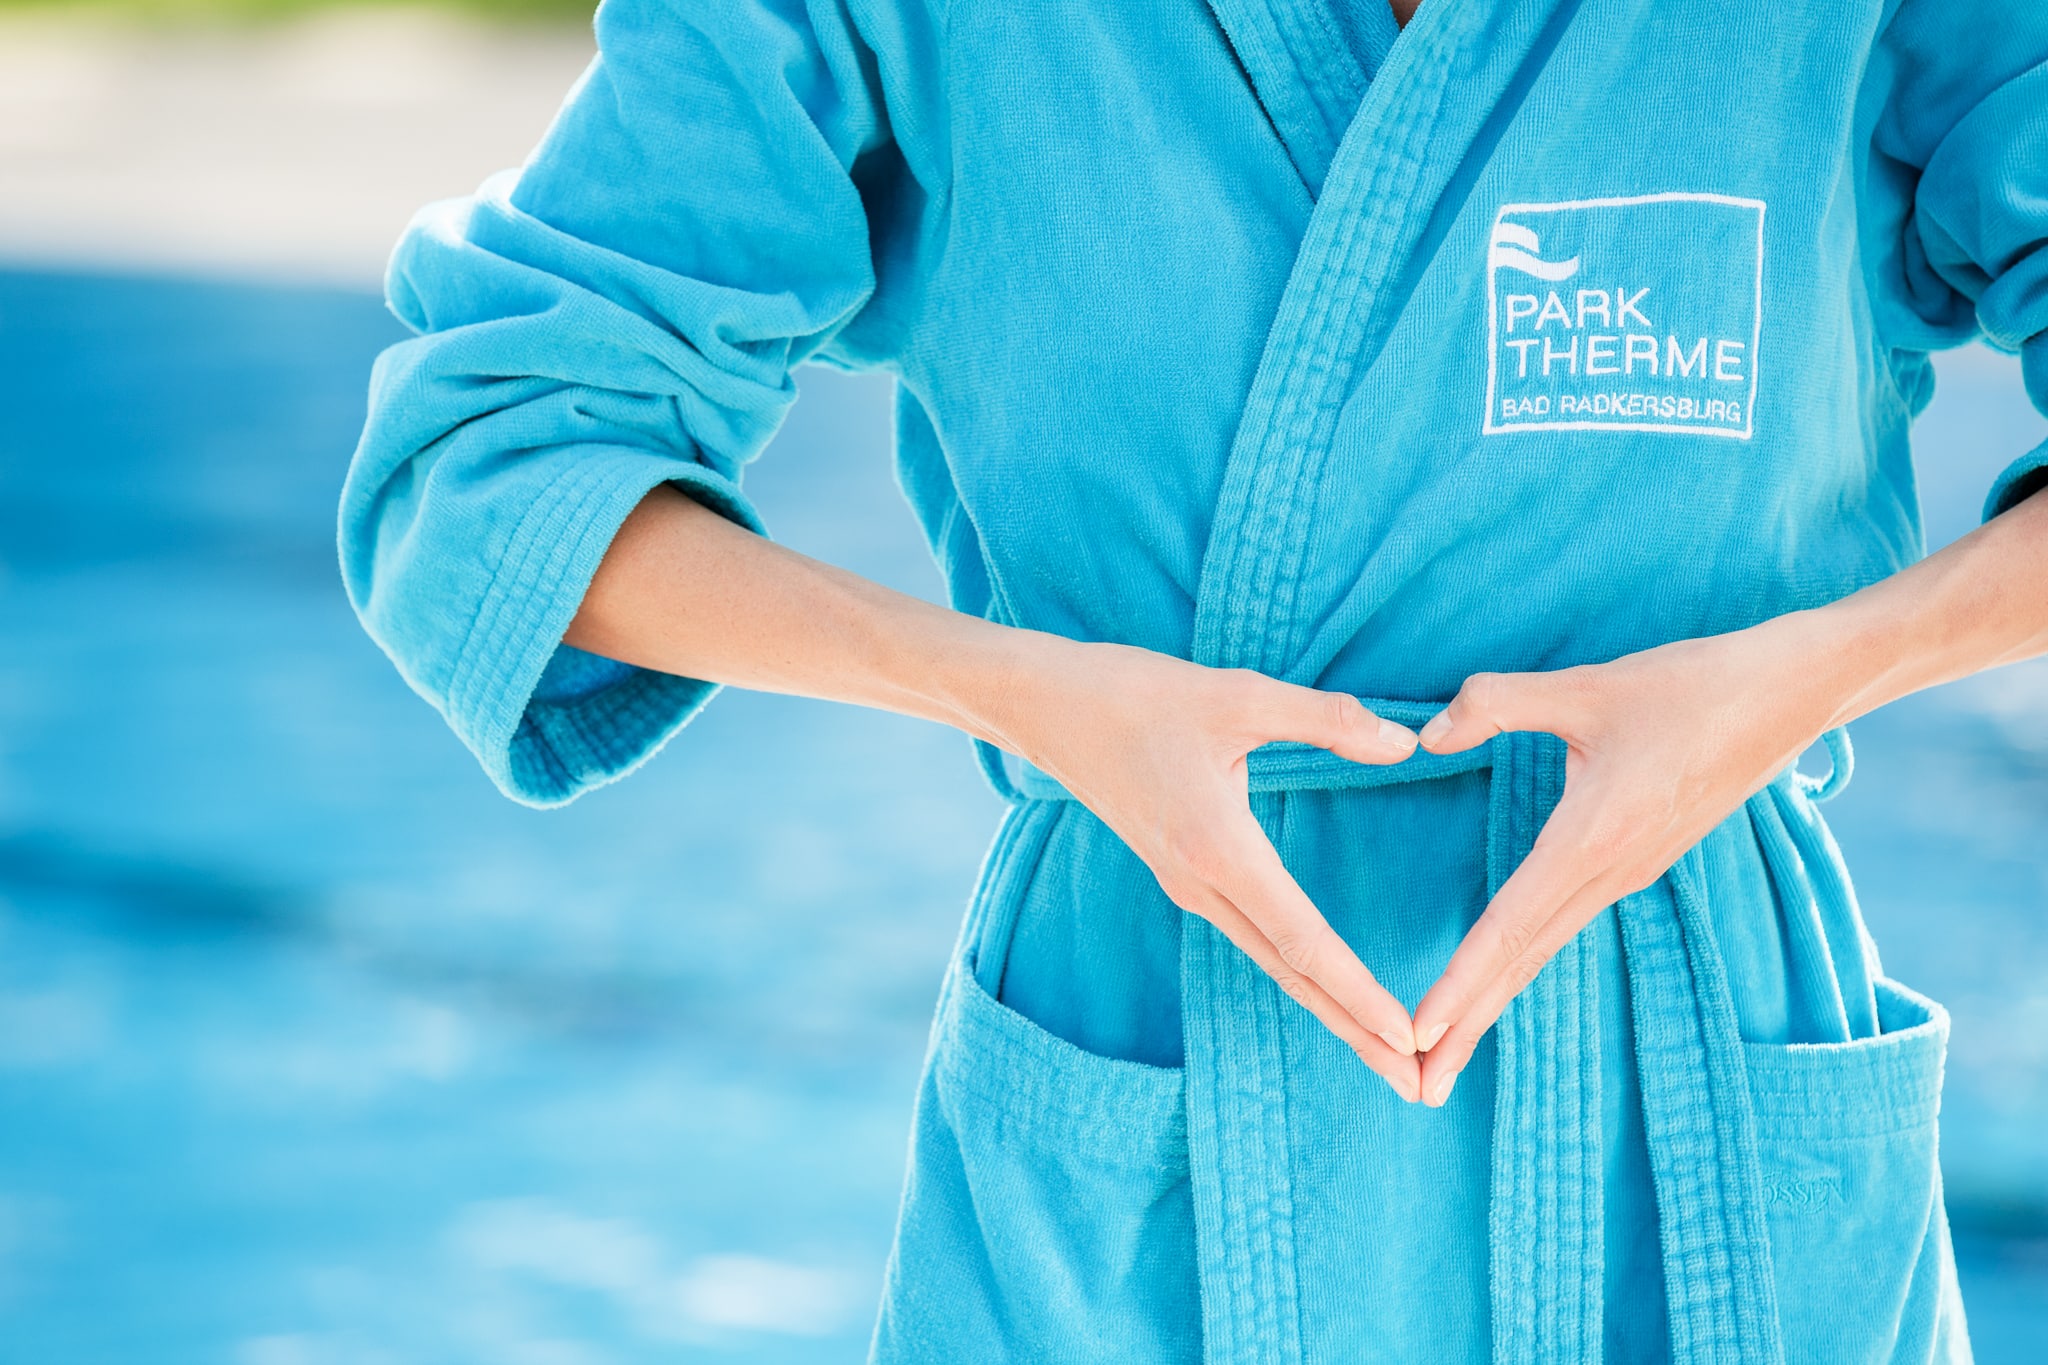 Eine Frau steht im blauen Bademantel vor dem Sportbecken und formt ihre Hände zu einem Herz.